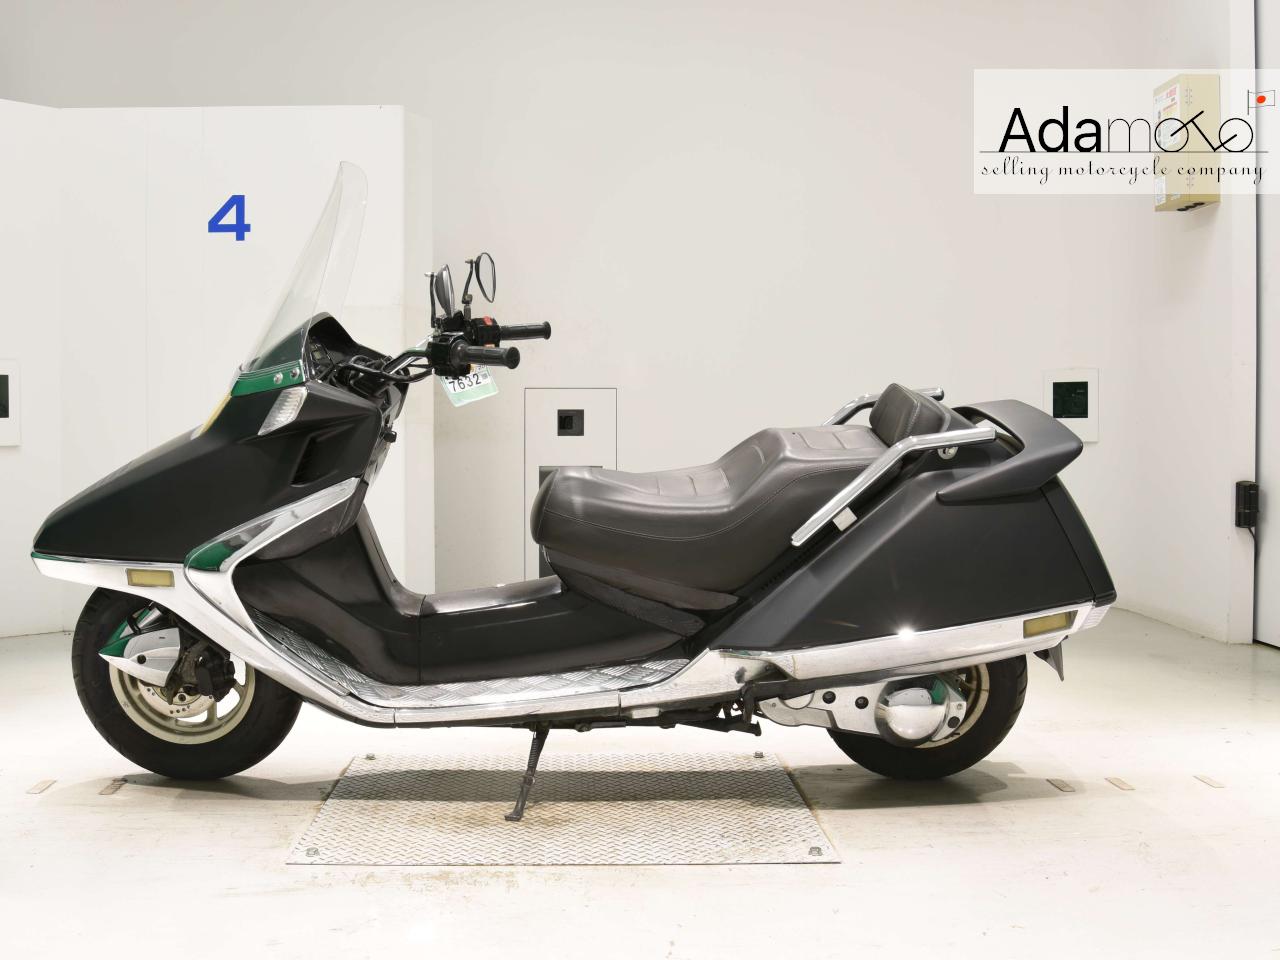 Honda FUSION 2 - Adamoto - Motorcycles from Japan